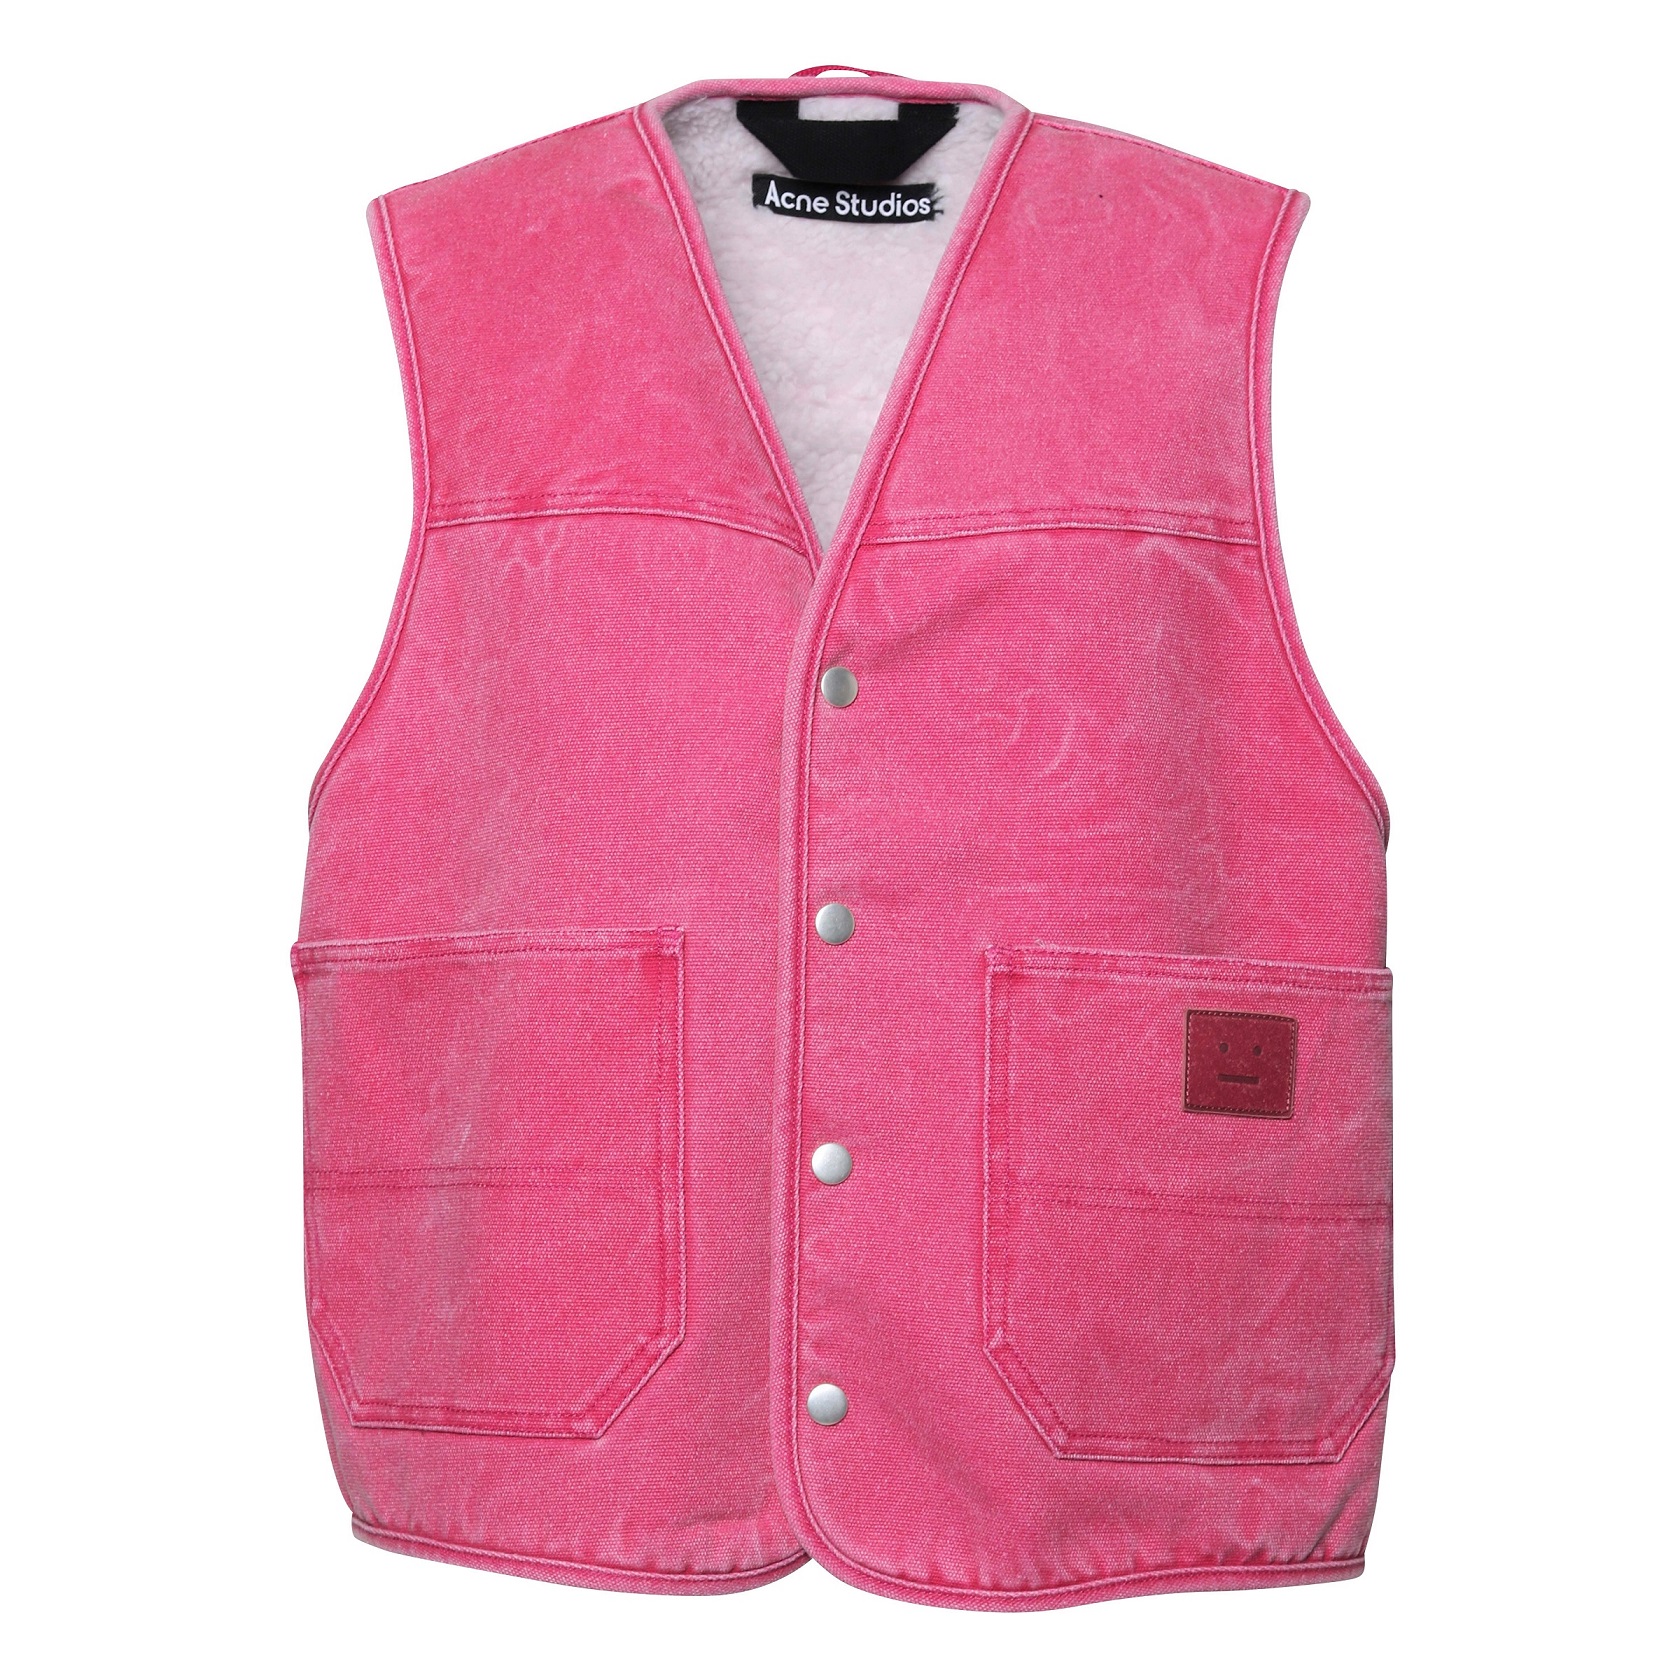 Acne Studios Cotton Canvas Vest in Fuchsia Pink S